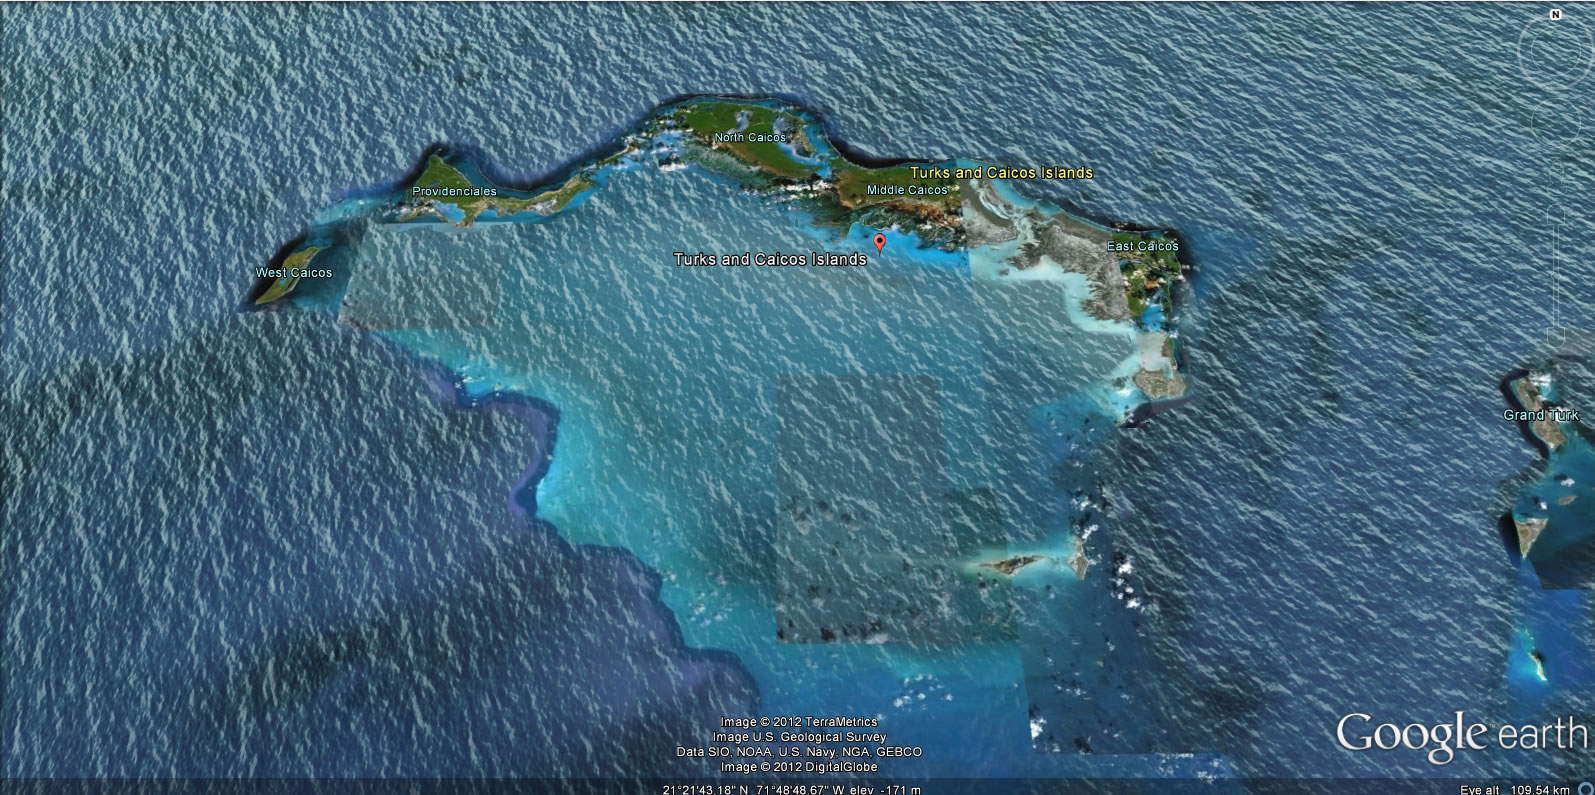 Turks and Caicos adalari yerkure haritasi